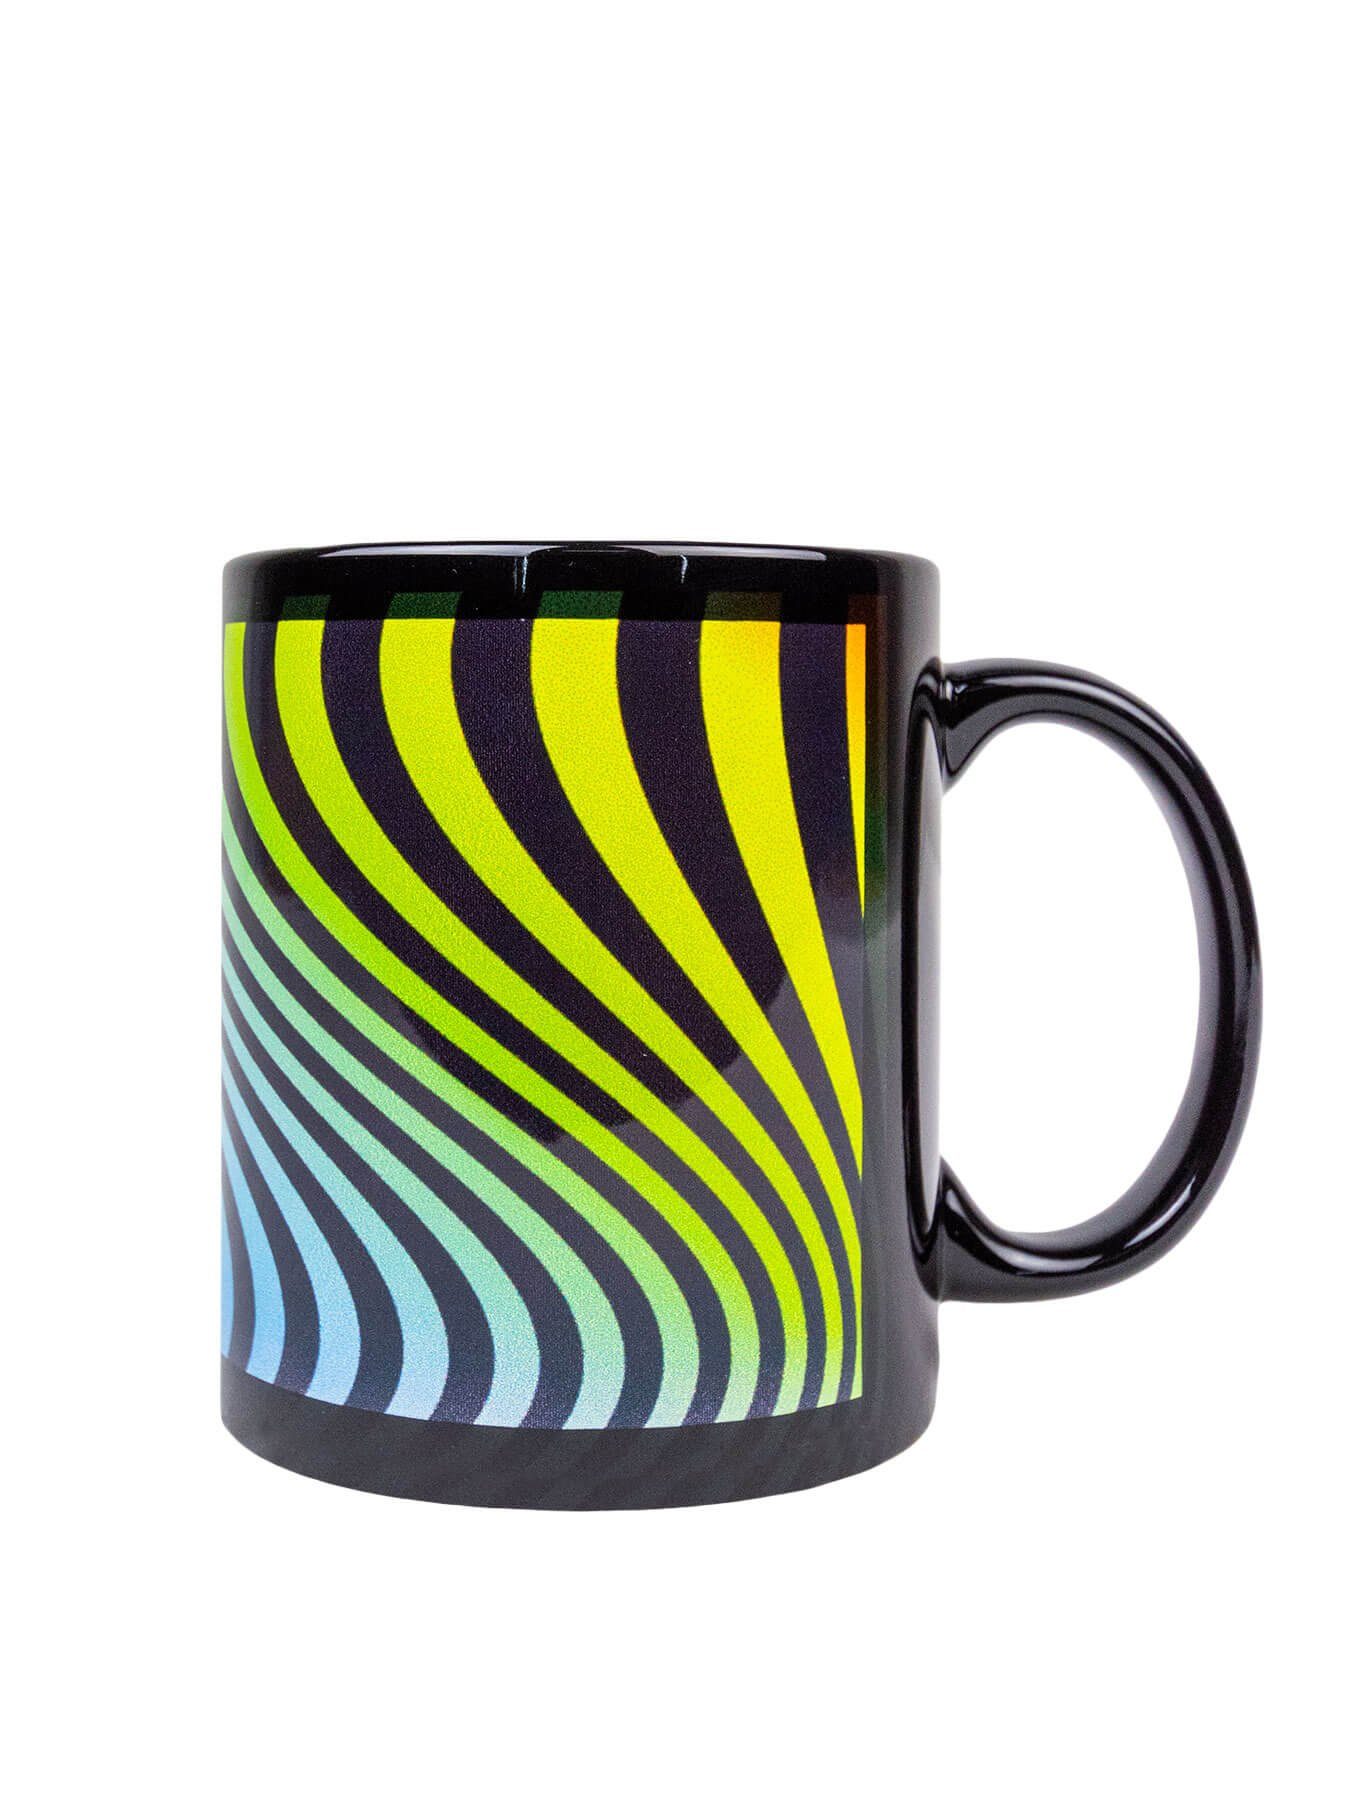 Tasse leuchtet Tasse Neon Waves", "Neon Fluo Motiv Cup Keramik, PSYWORK Schwarzlicht unter UV-aktiv,